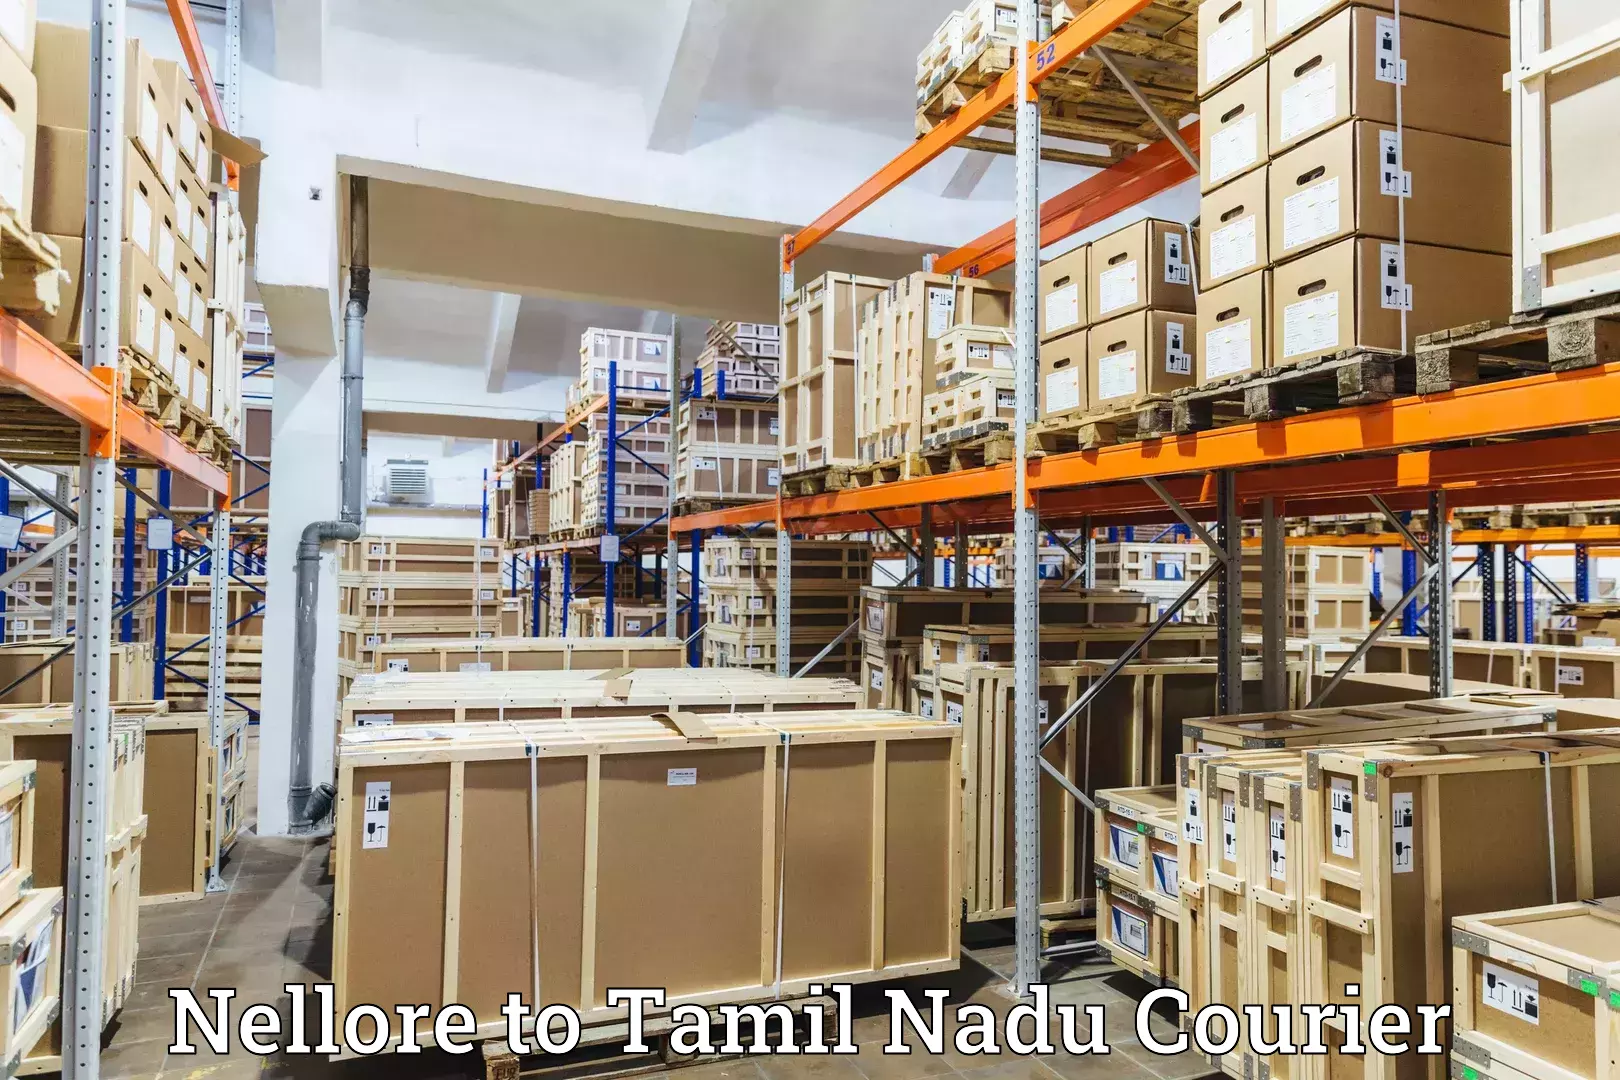 Efficient courier operations Nellore to Amrita Vishwa Vidyapeetham Coimbatore